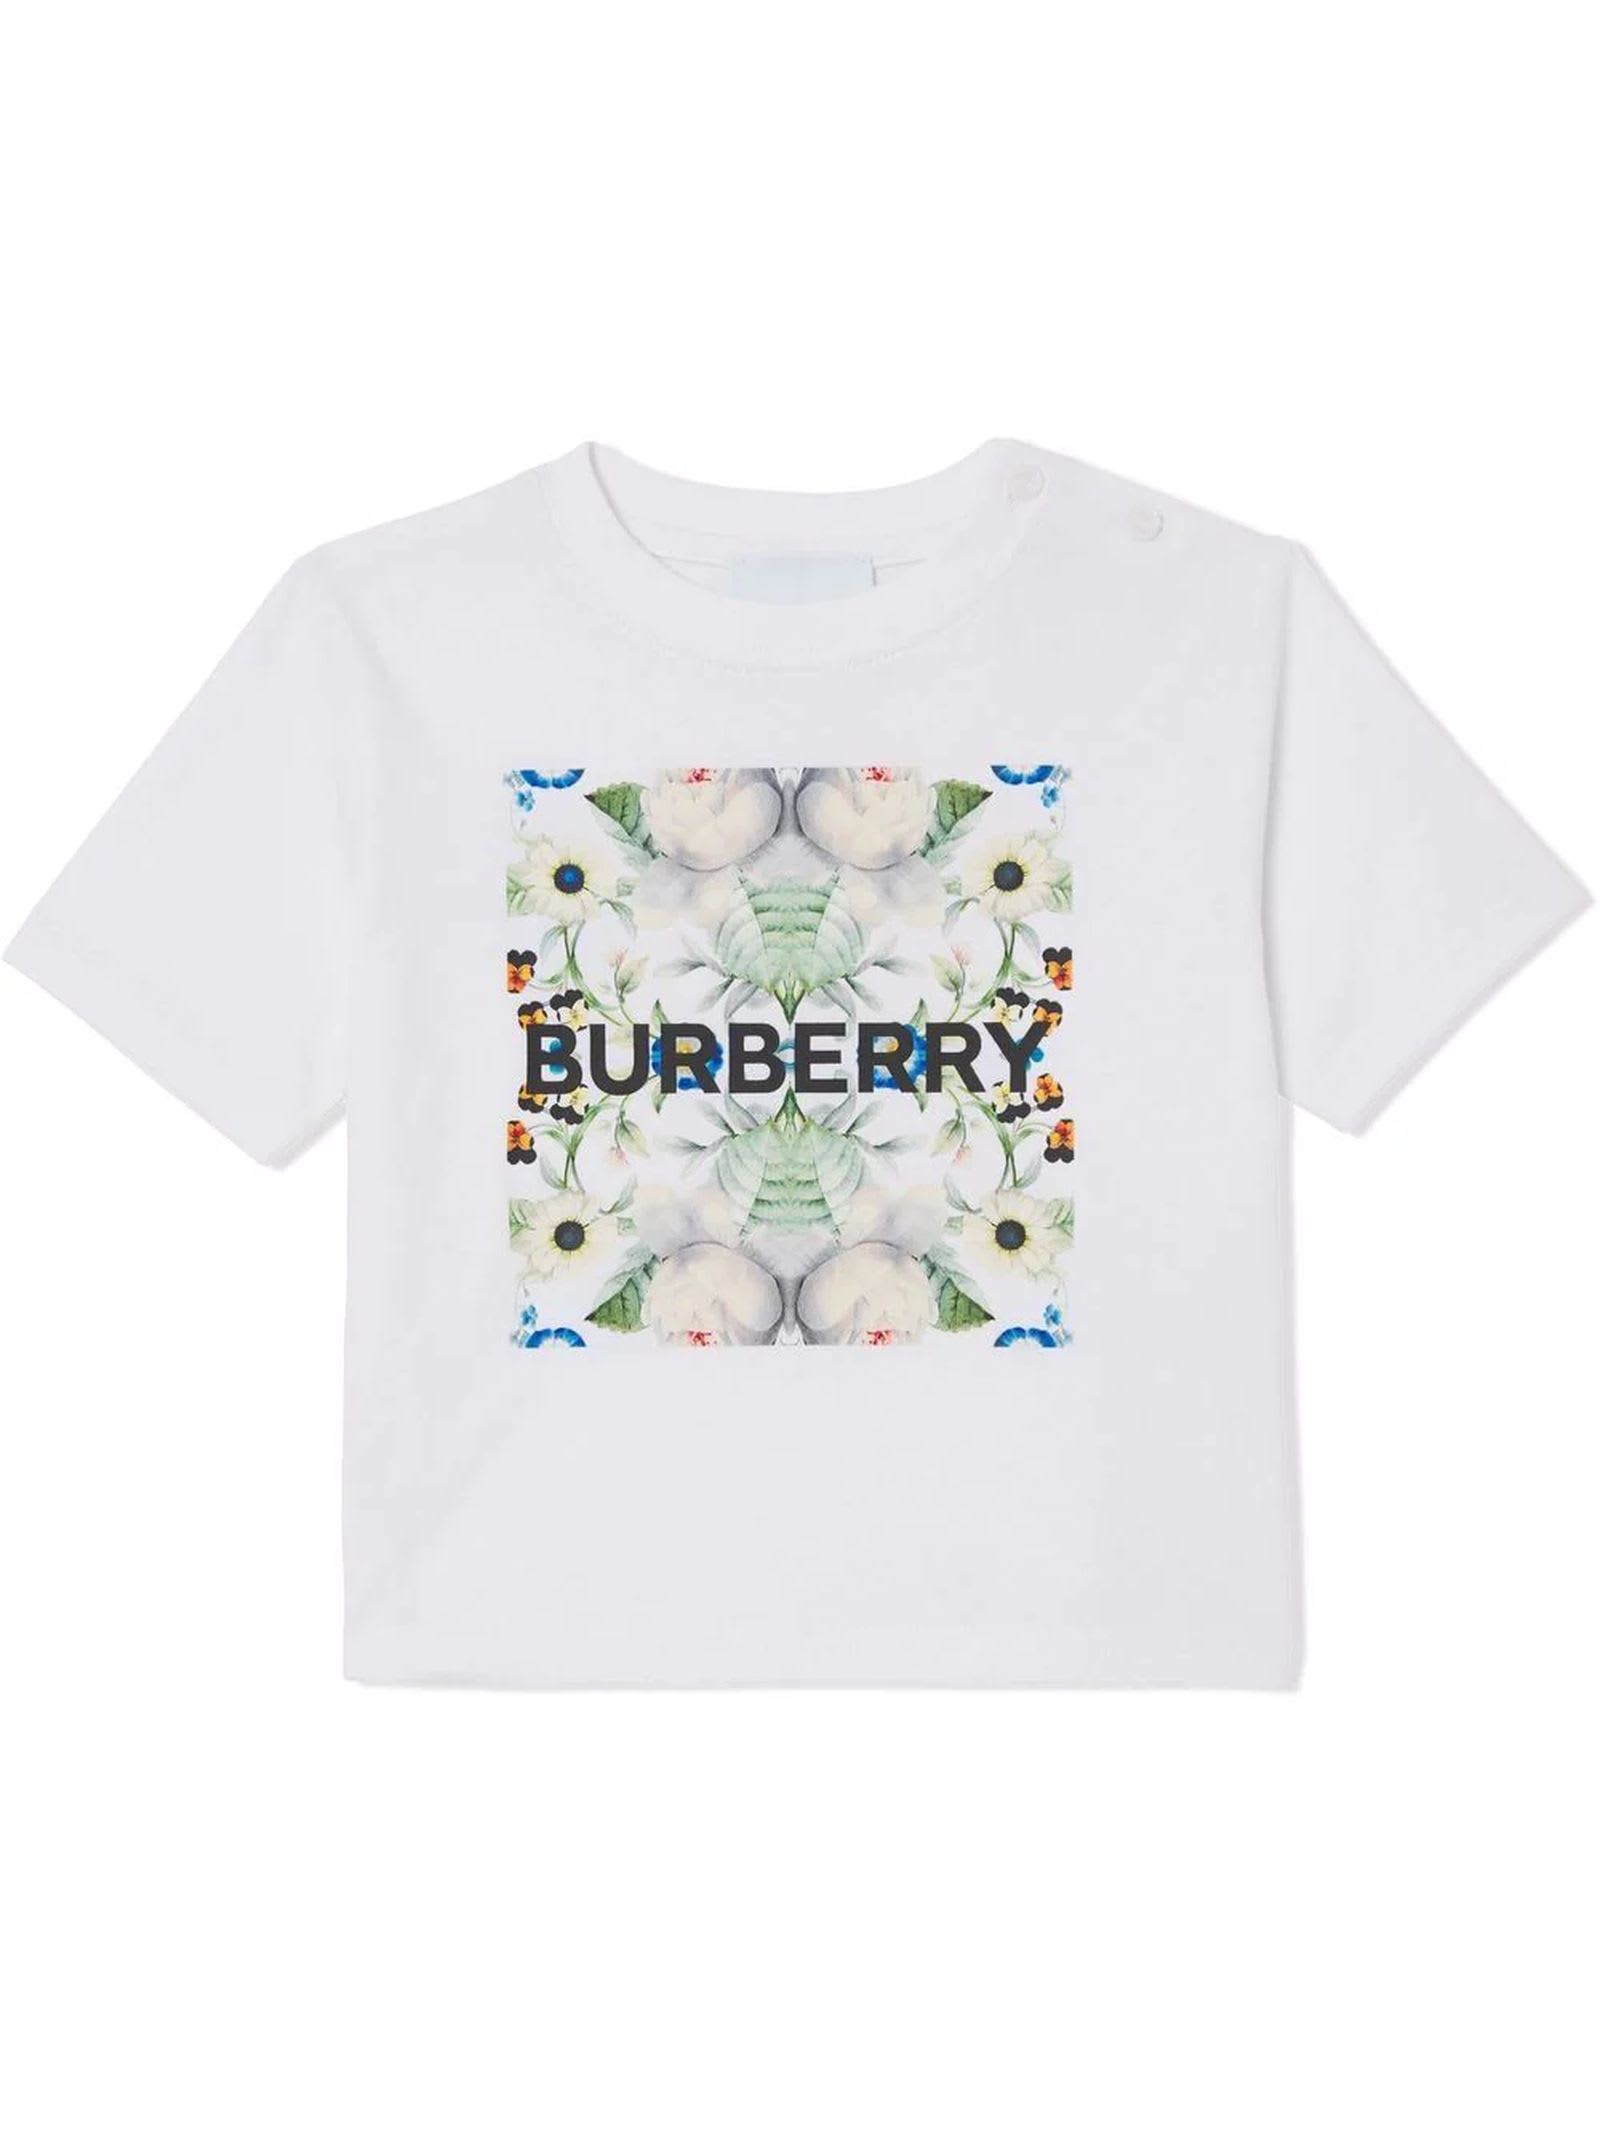 Burberry White Cotton Tshirt